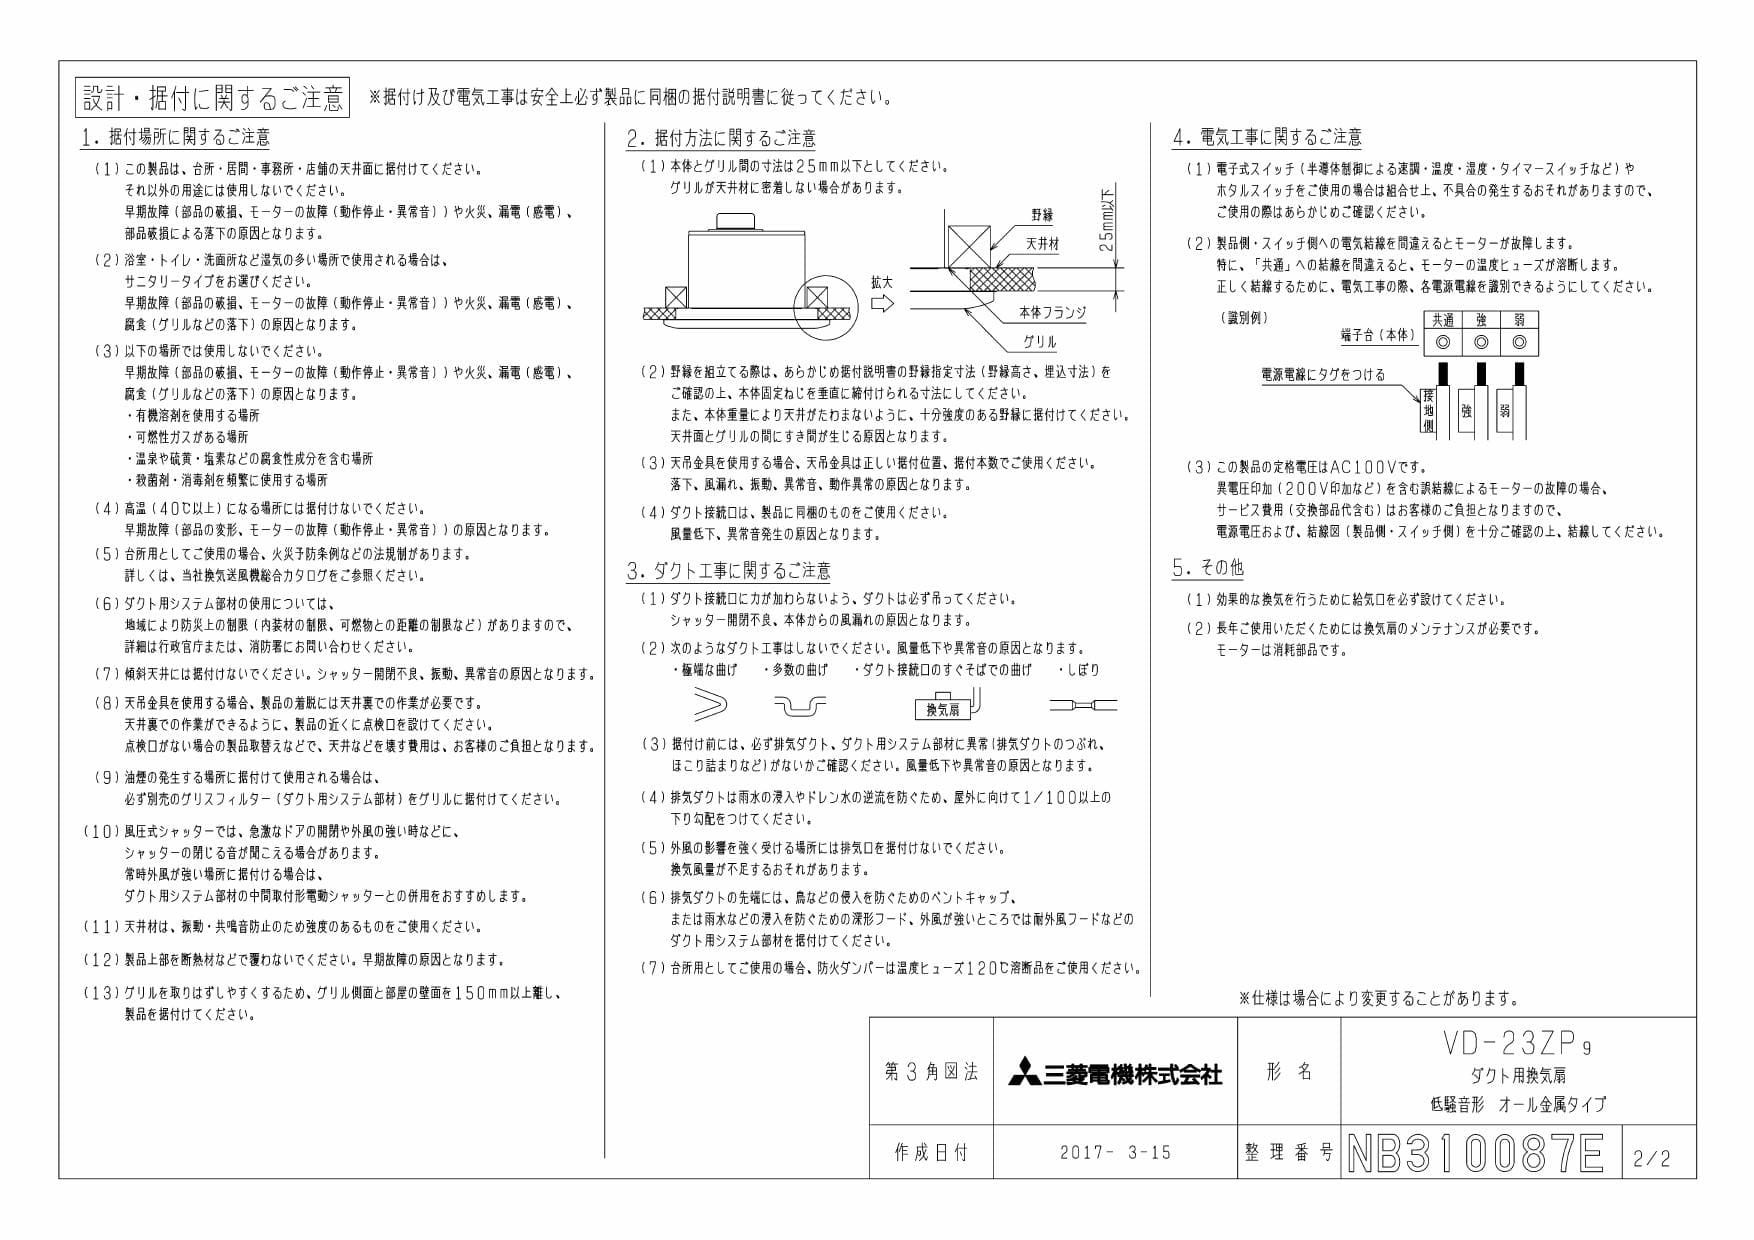 三菱 換気扇 VD-23ZP13 天井埋込型 未開封 【高い素材】